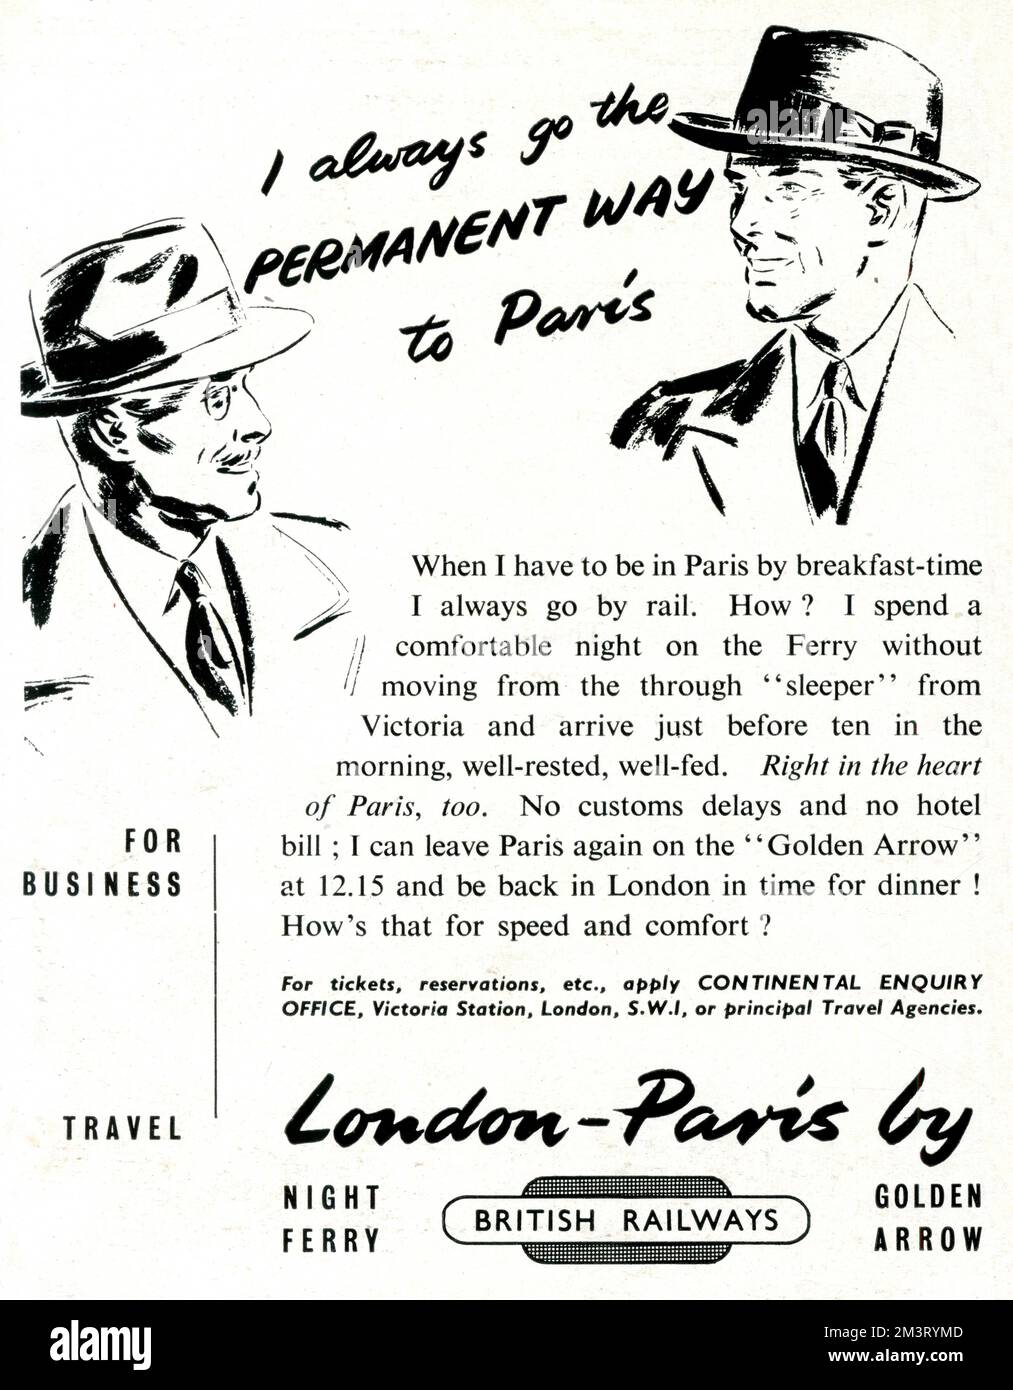 Je vais toujours la voie permanente à Paris - Voyage d'affaires avec les chemins de fer britanniques - publicité. 1949 Banque D'Images